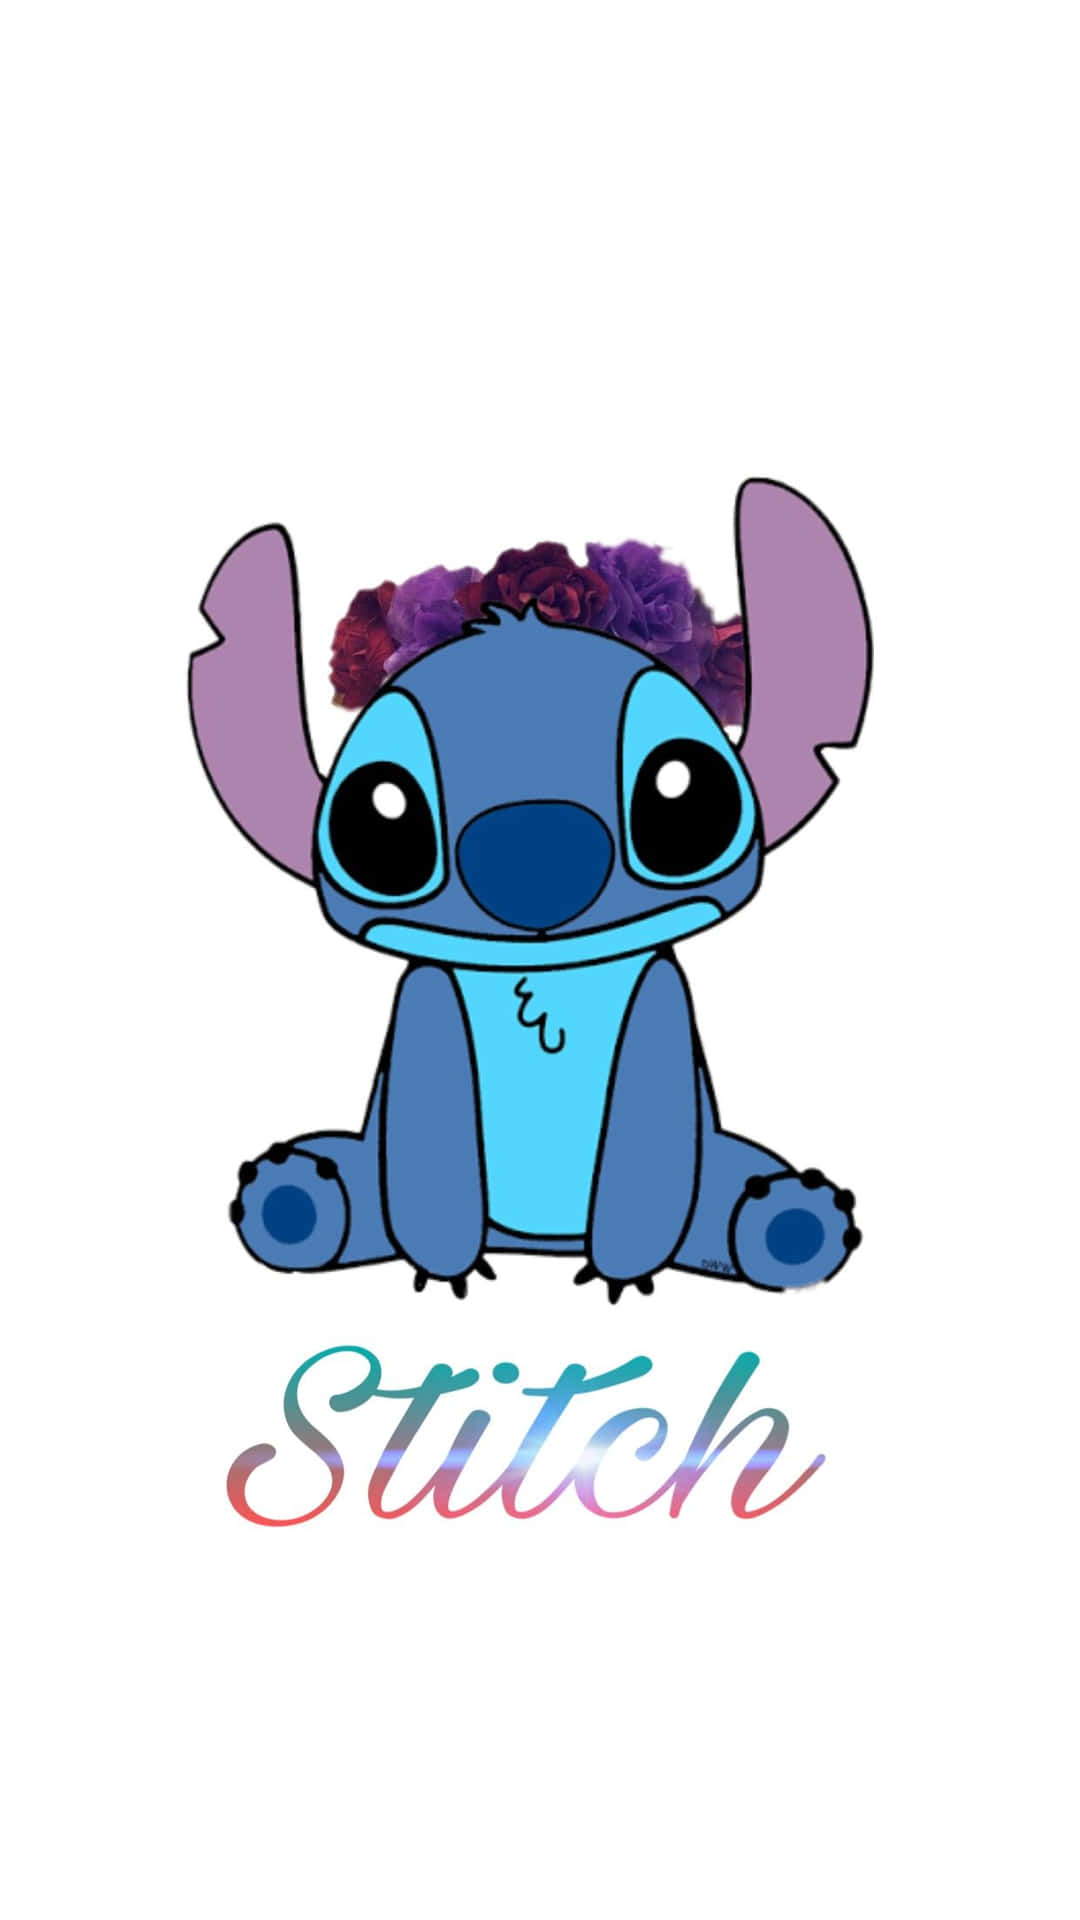 Free Cute Baby Stitch Wallpaper Downloads, [100+] Cute Baby Stitch  Wallpapers for FREE 